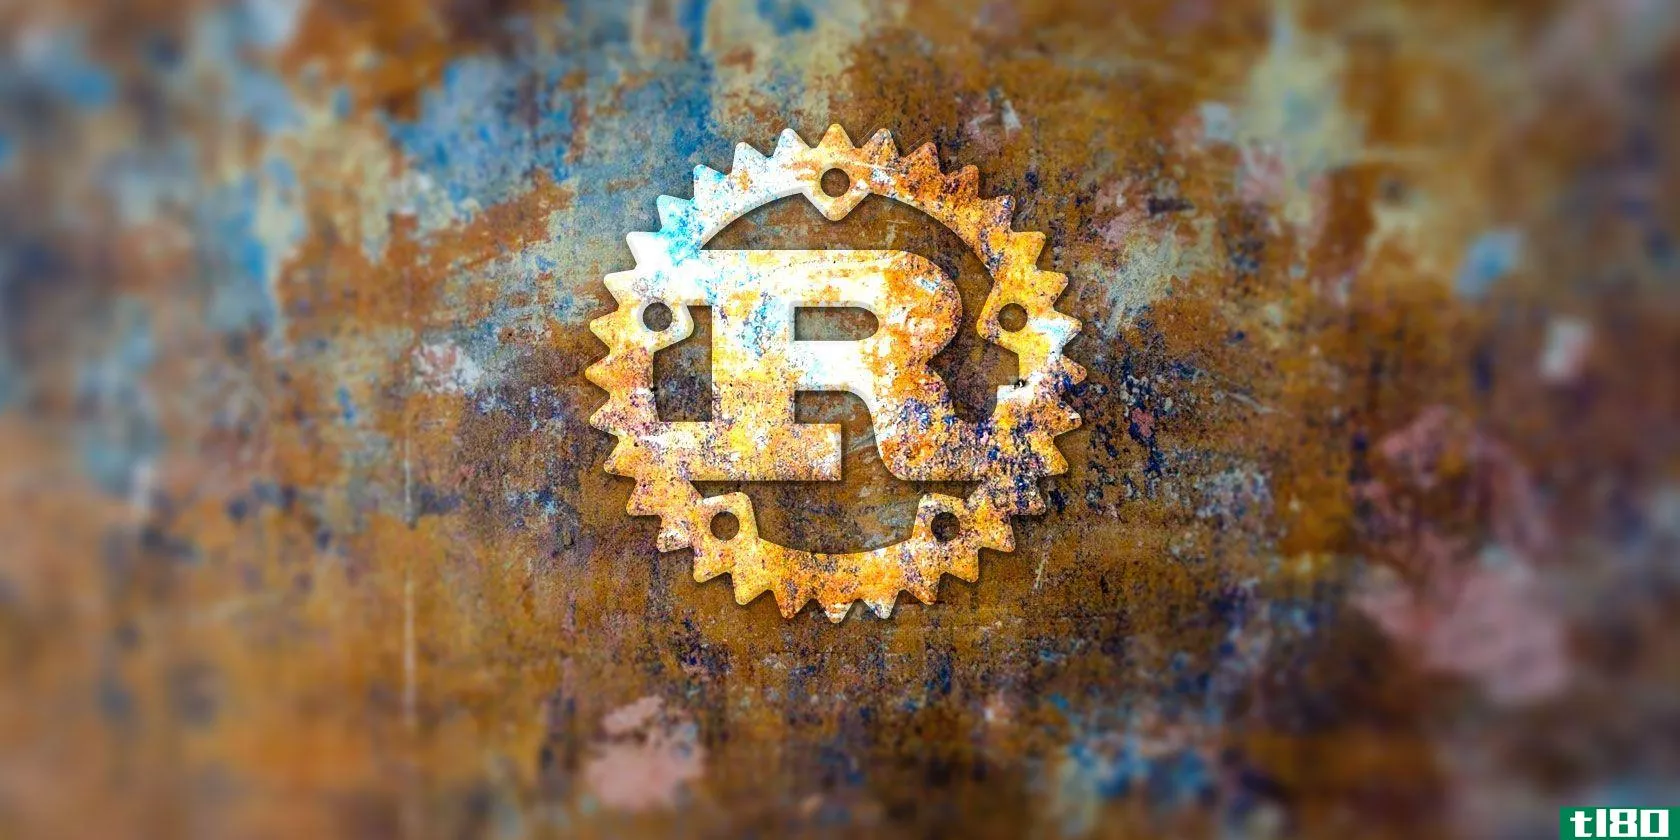 rust是最令人兴奋的新编程语言